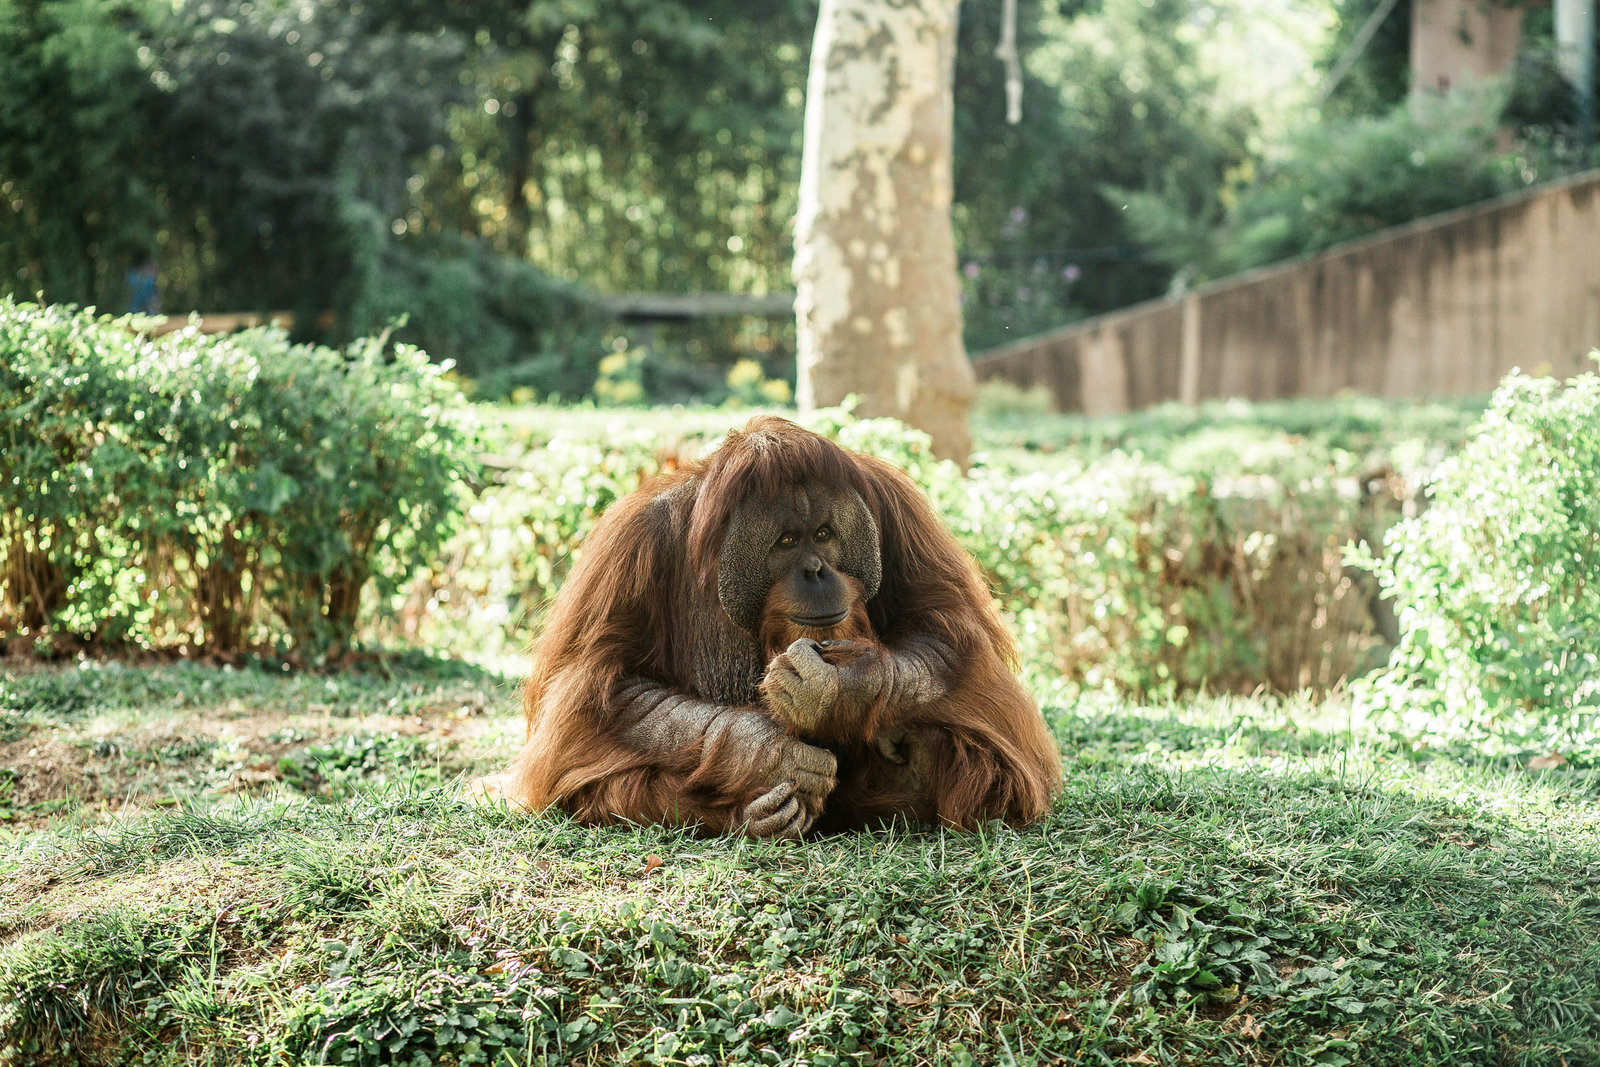 orangutan-zoo-nature-philadelphia-pa-kate-timbers-photography-2042